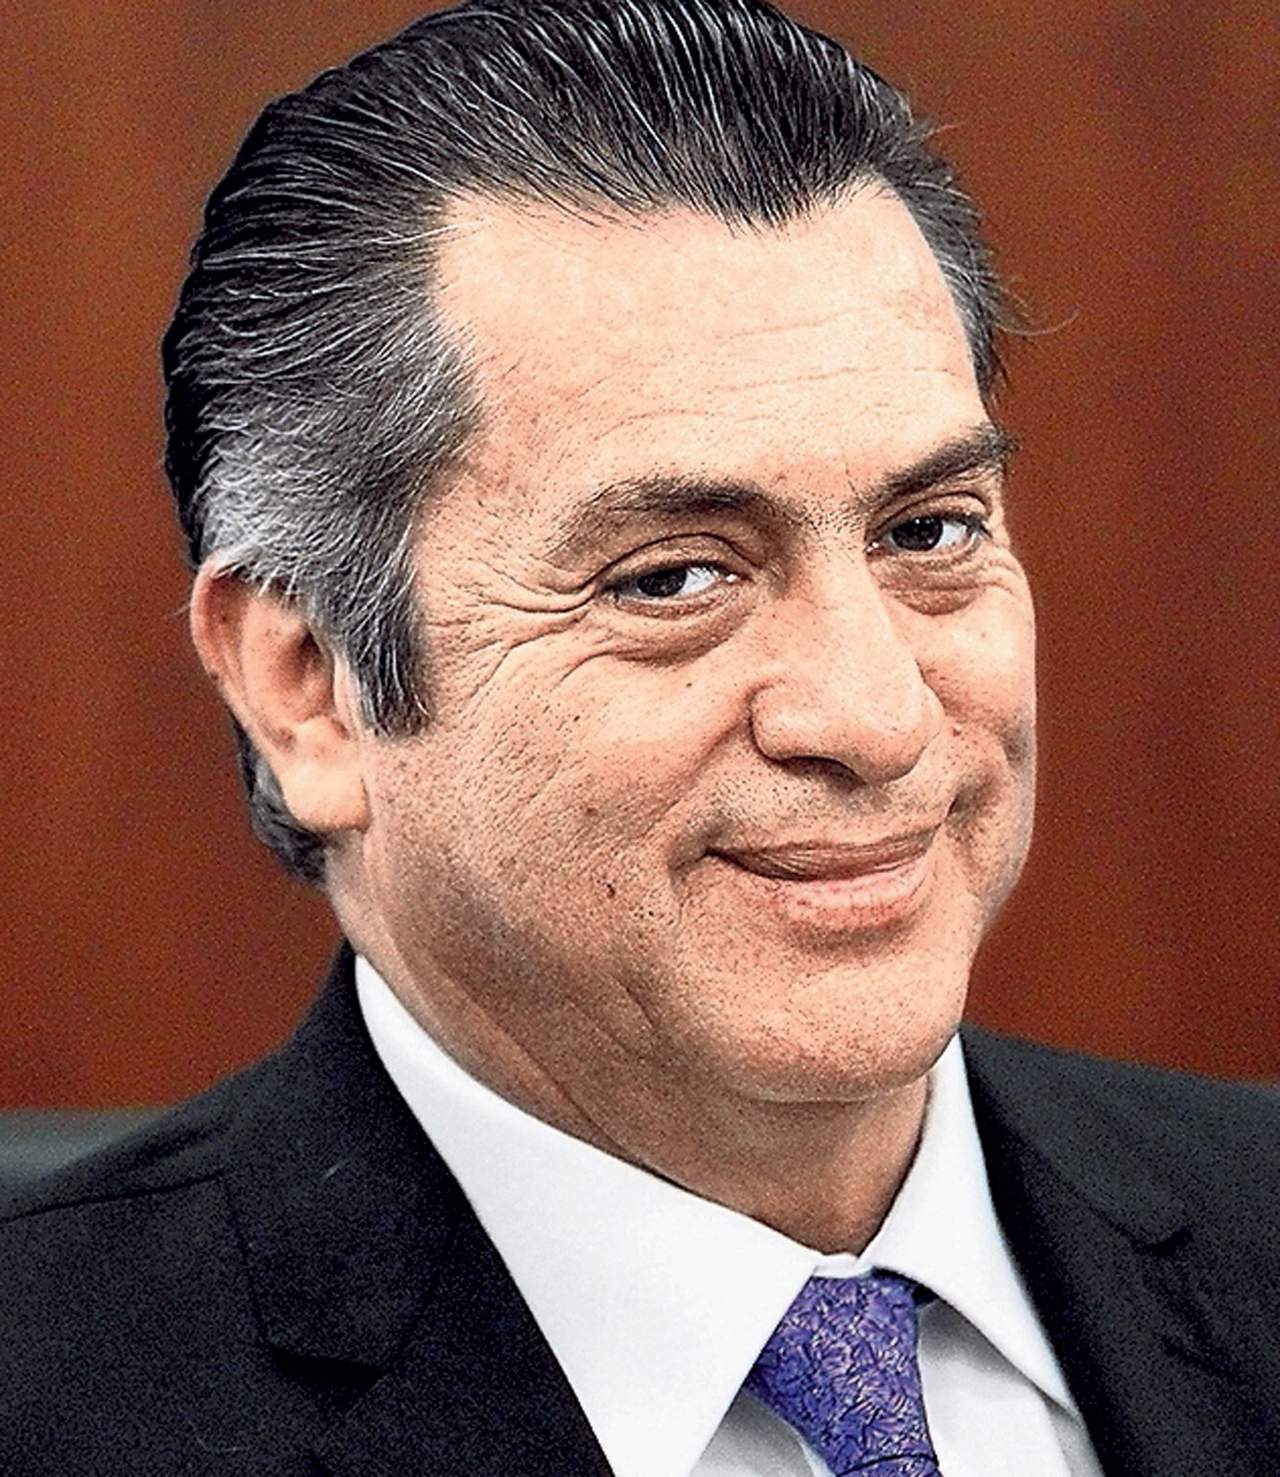  Jaime Rodríguez Calderón, 'El Bronco', pidió licencia este miércoles a su cargo como gobernador de Nuevo León para continuar con su campaña por una candidatura para buscar la Presidencia en 2018. (EL UNIVERSAL)